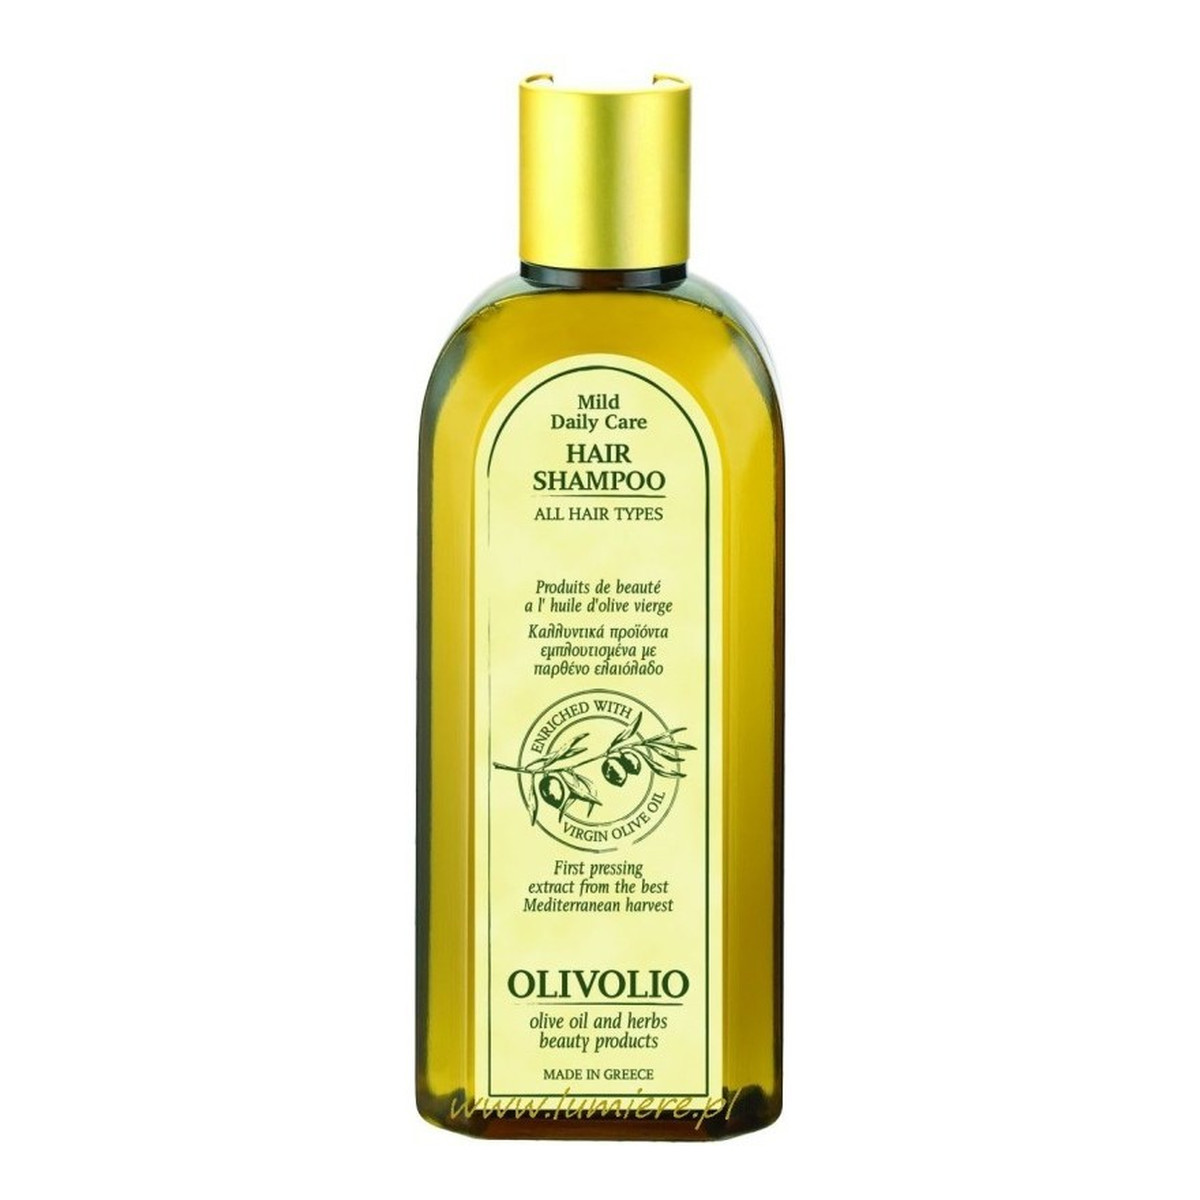 olivolio szampon